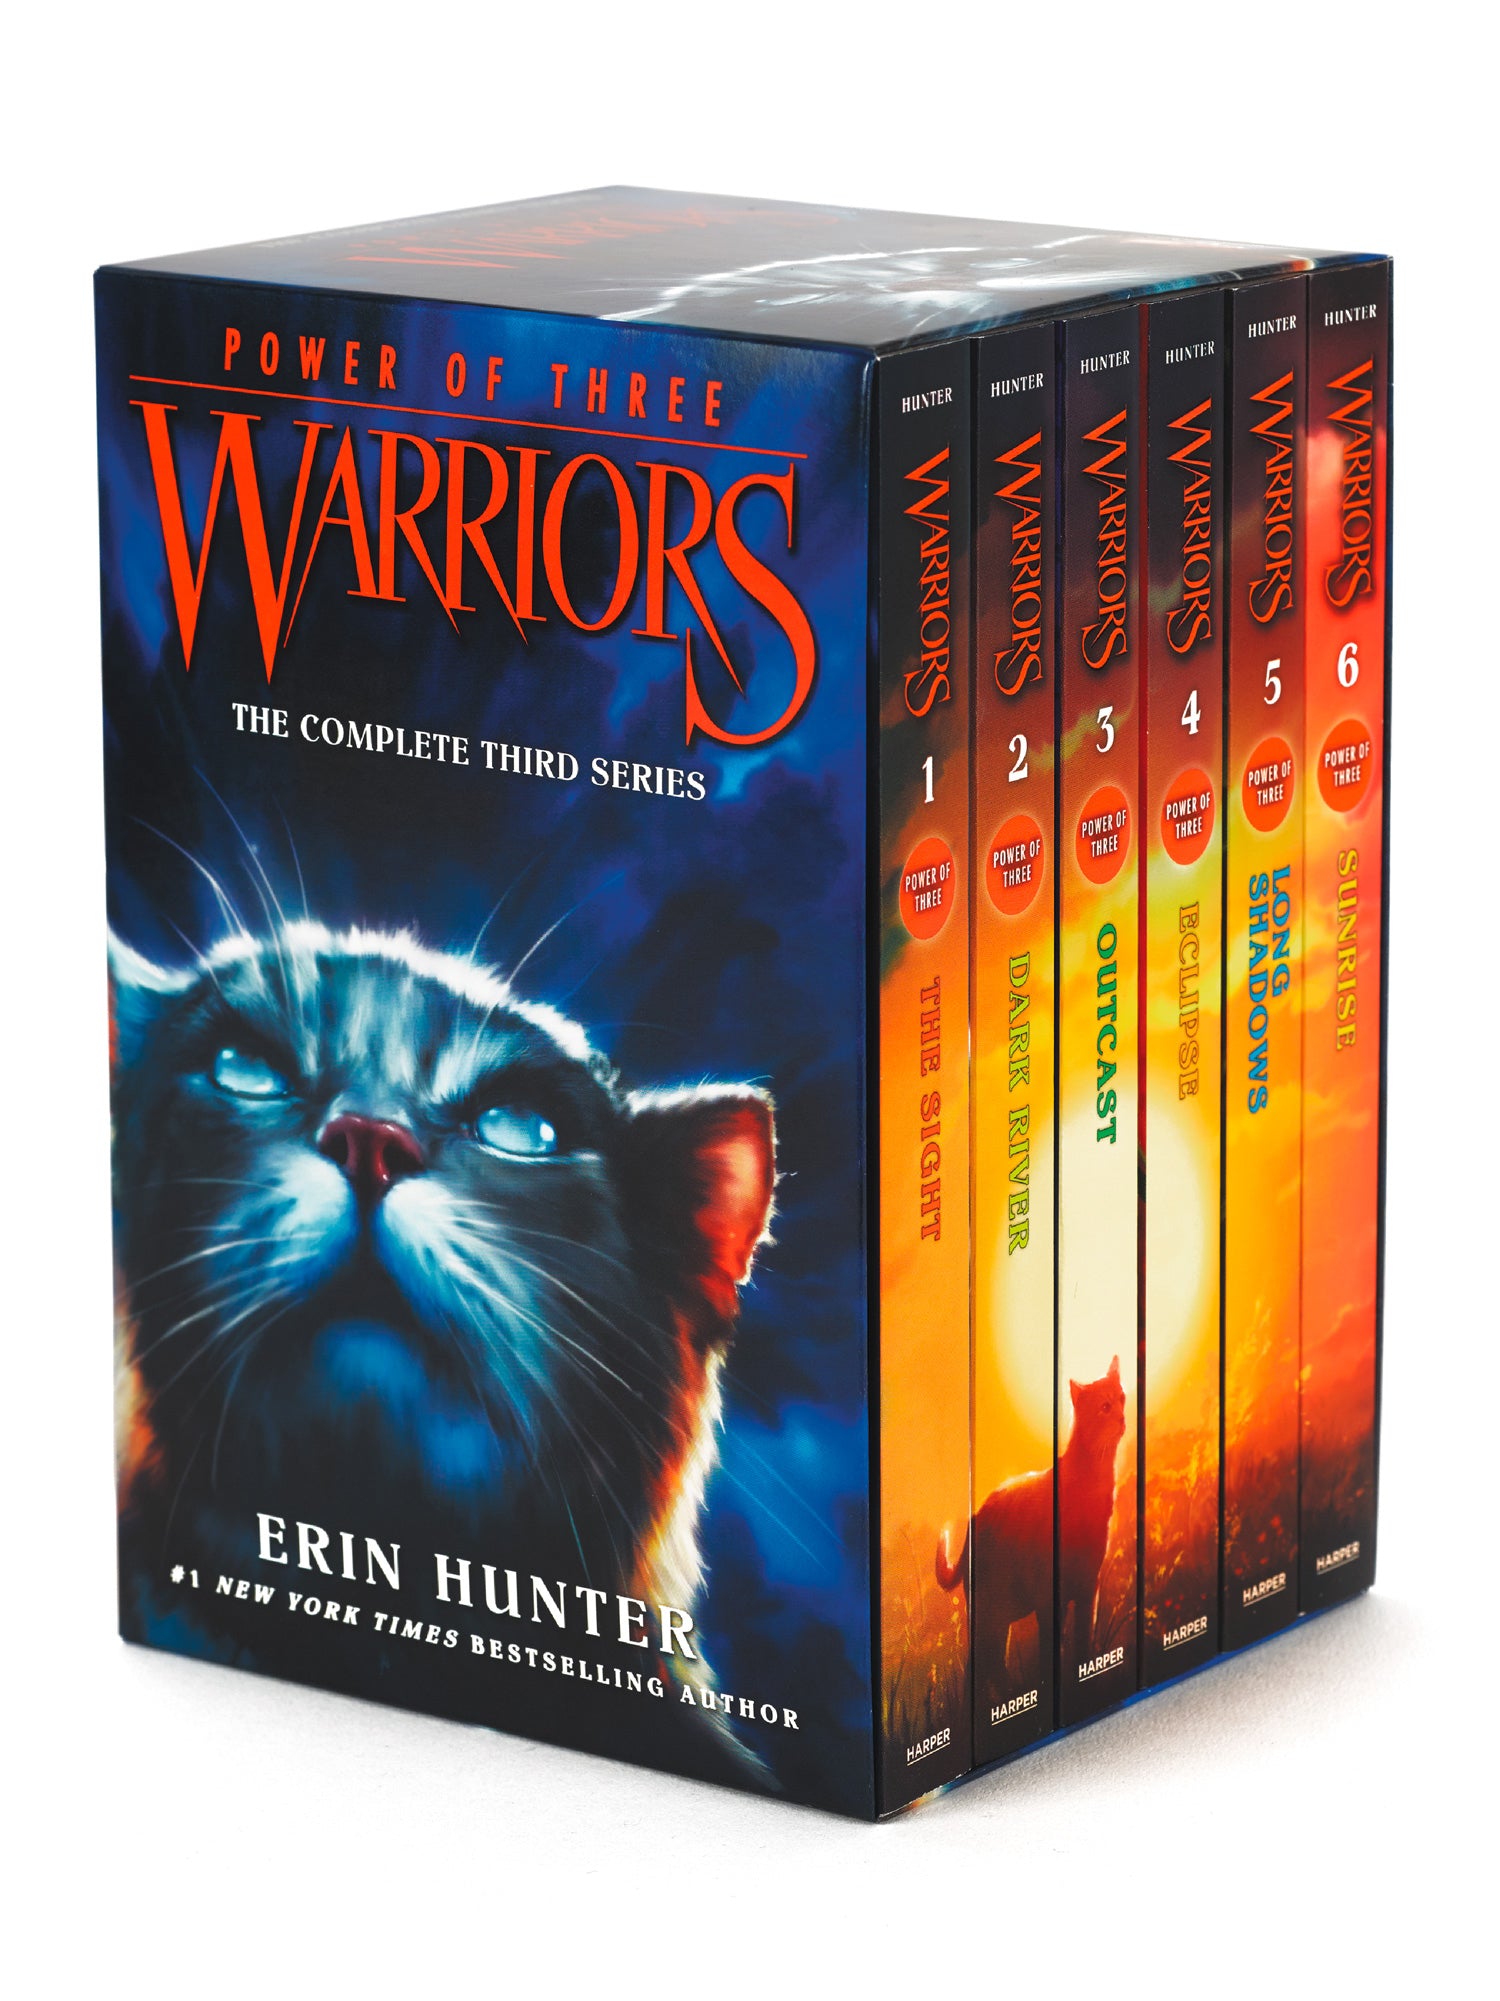 Firestar by shallowmistart  Warrior cats books, Warrior cats art, Warrior  cats